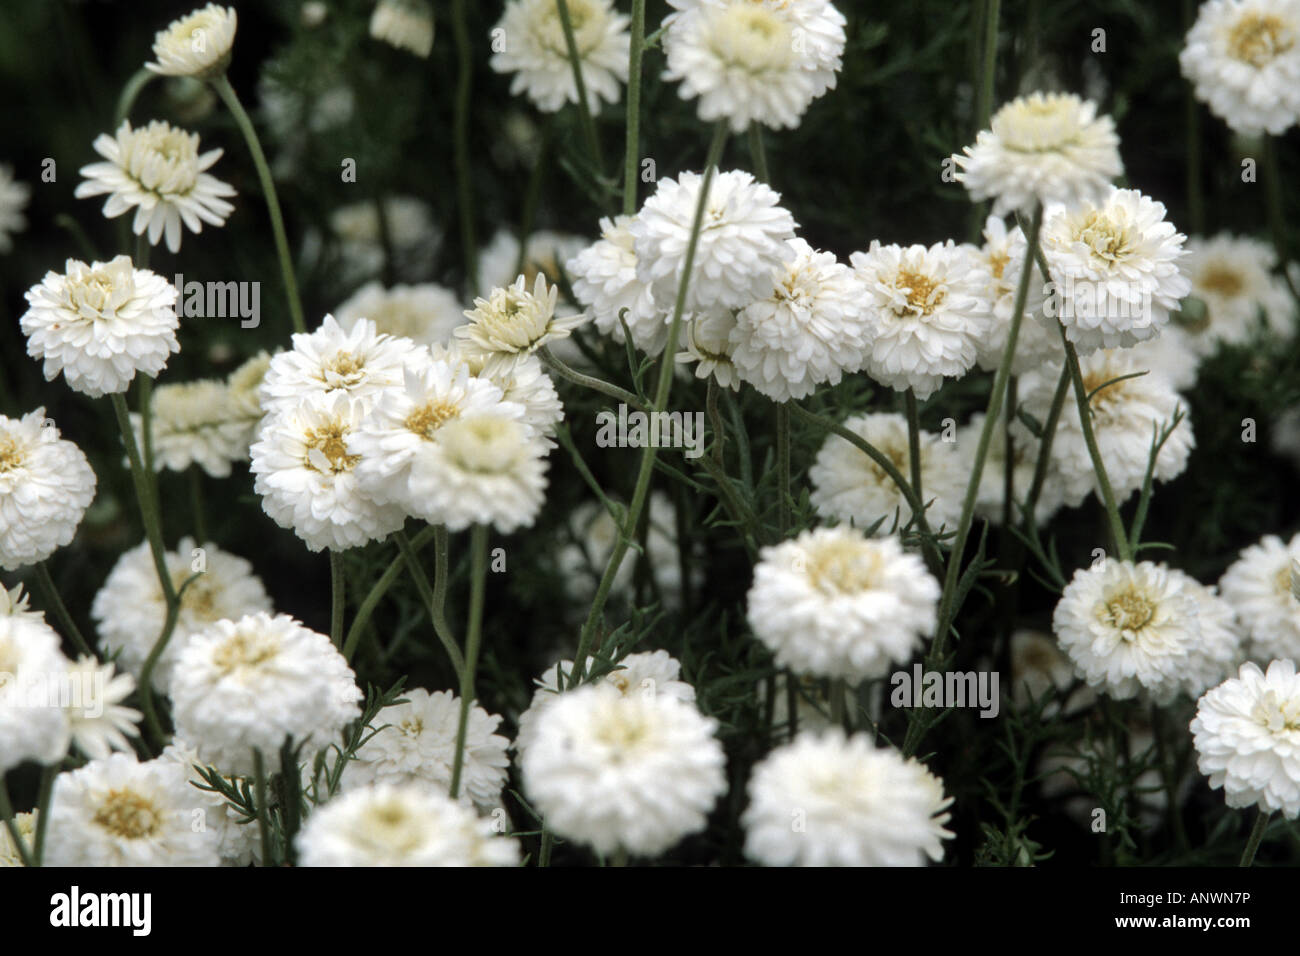 Garden chamomile, Roman chamomile (Chamaemelum nobile, Anthemis nobilis), blooming plants Stock Photo